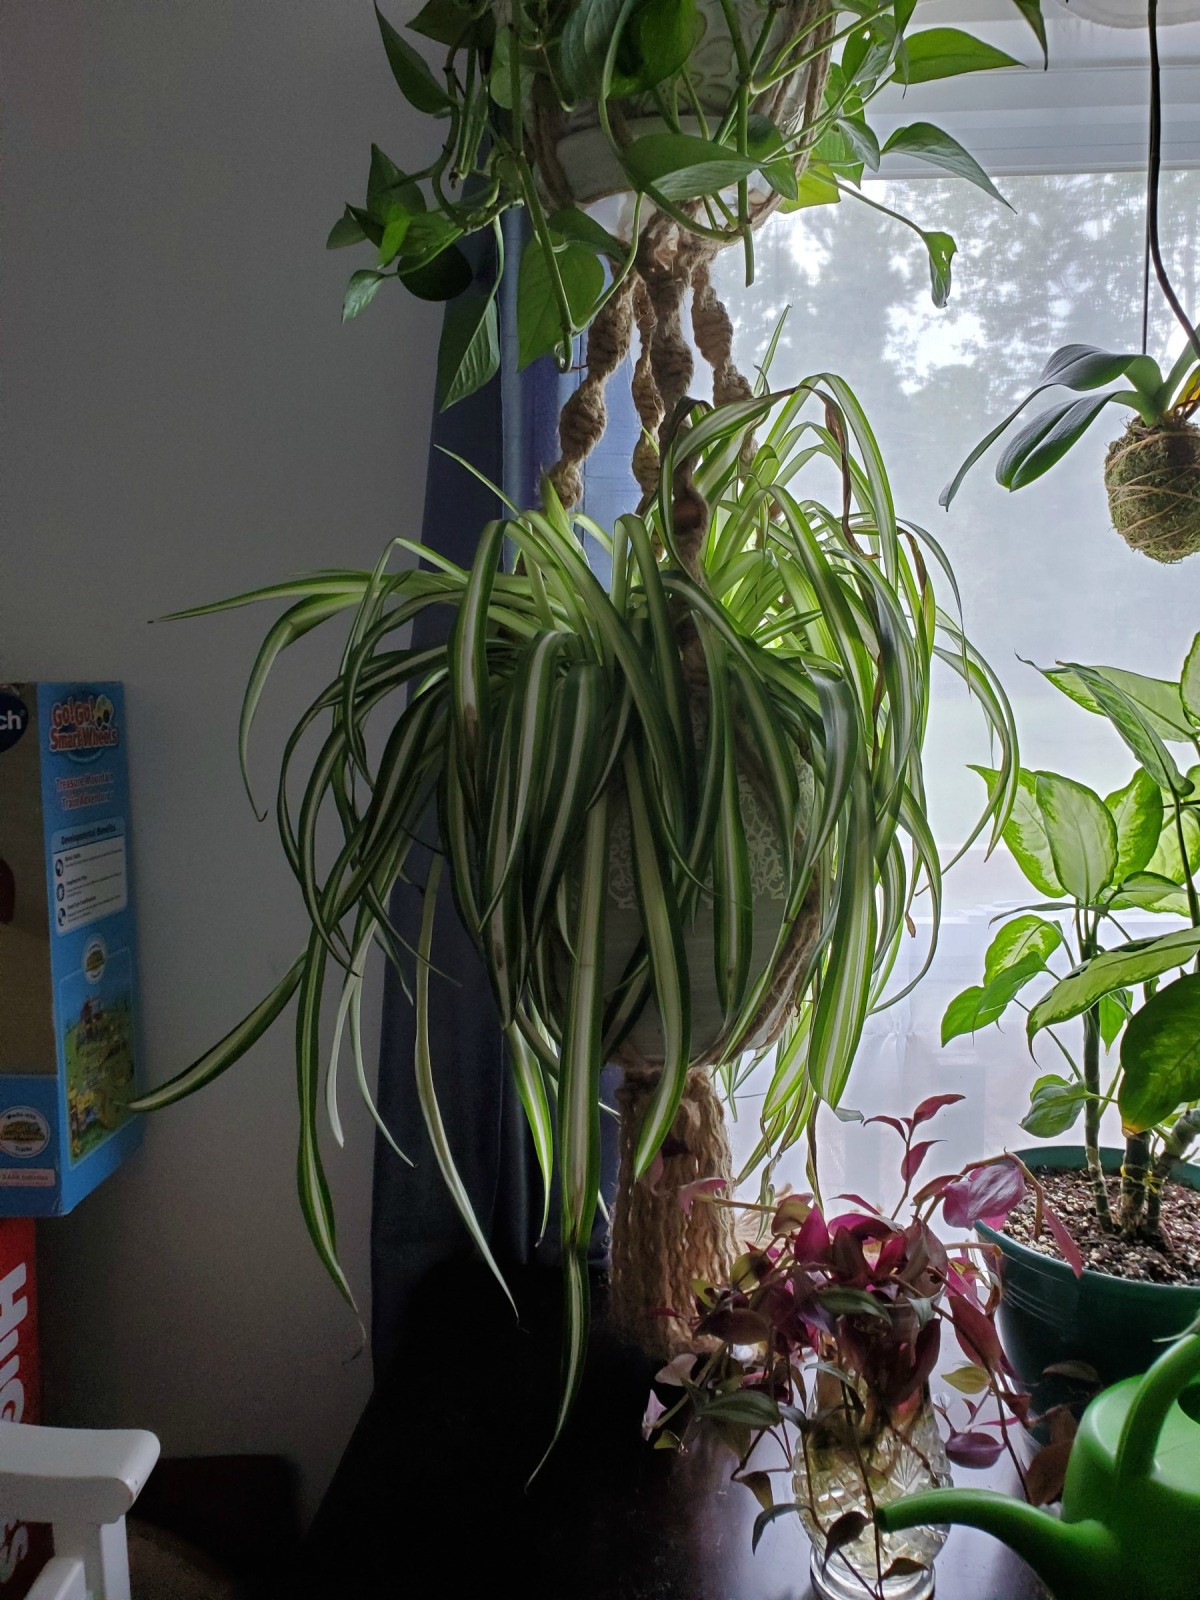 Dlhé stonky na izbovej rastline klesajú